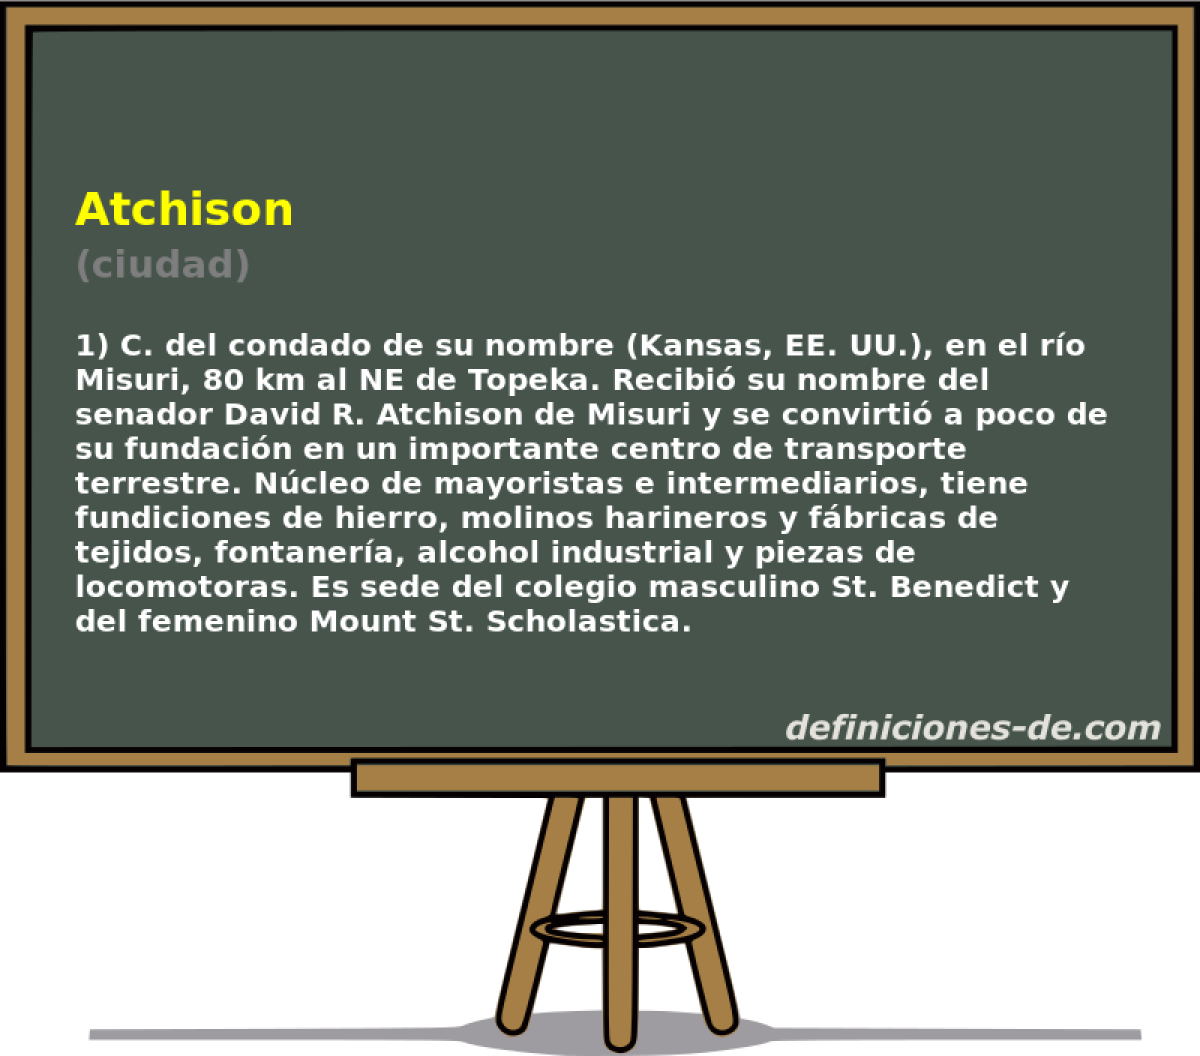 Atchison (ciudad)